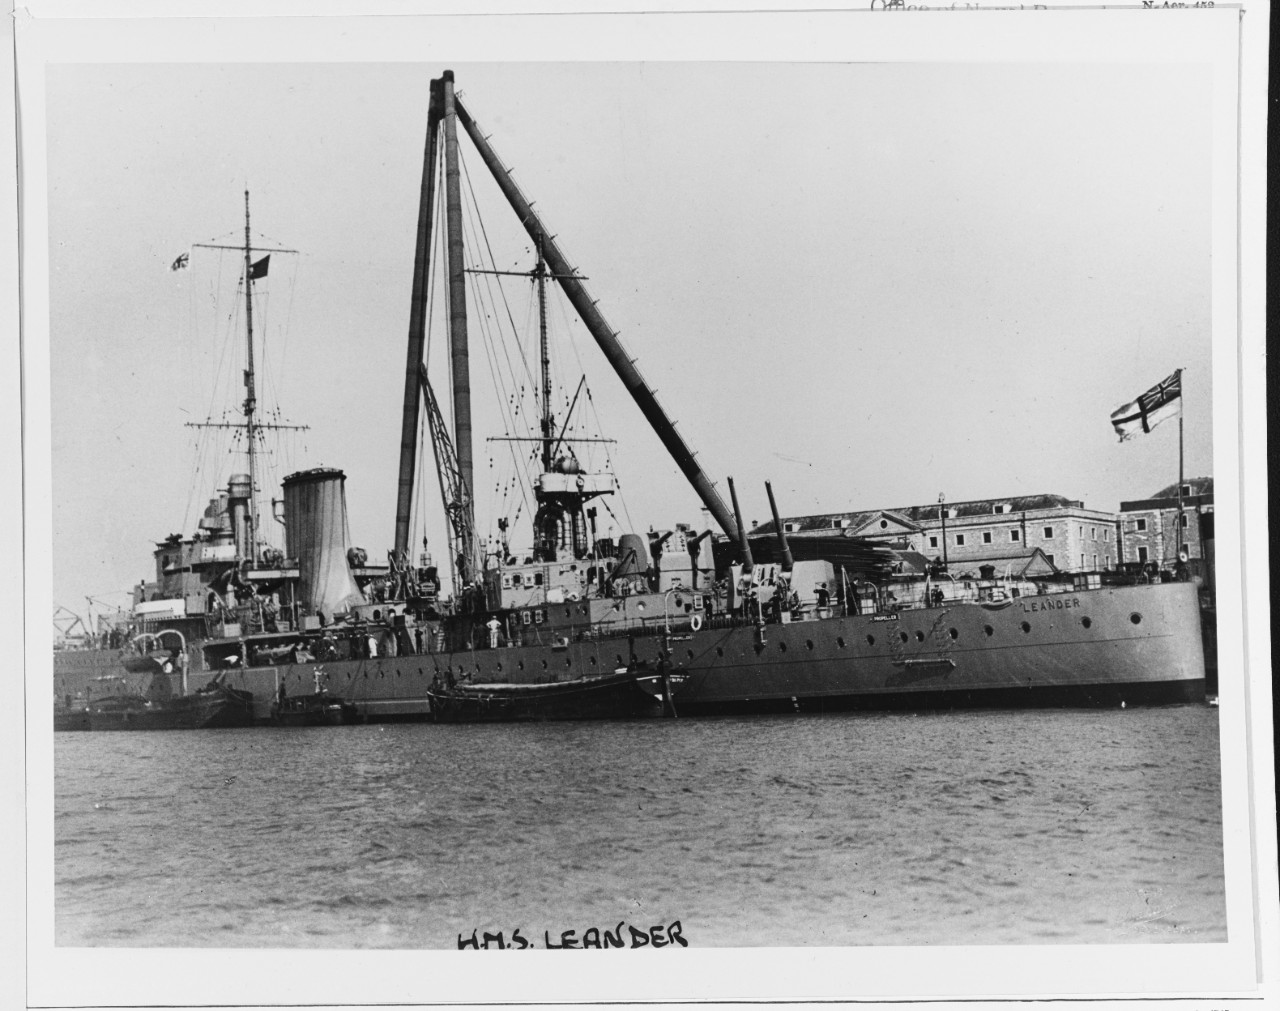 HMS LEANDER (British Cruiser, 1931)